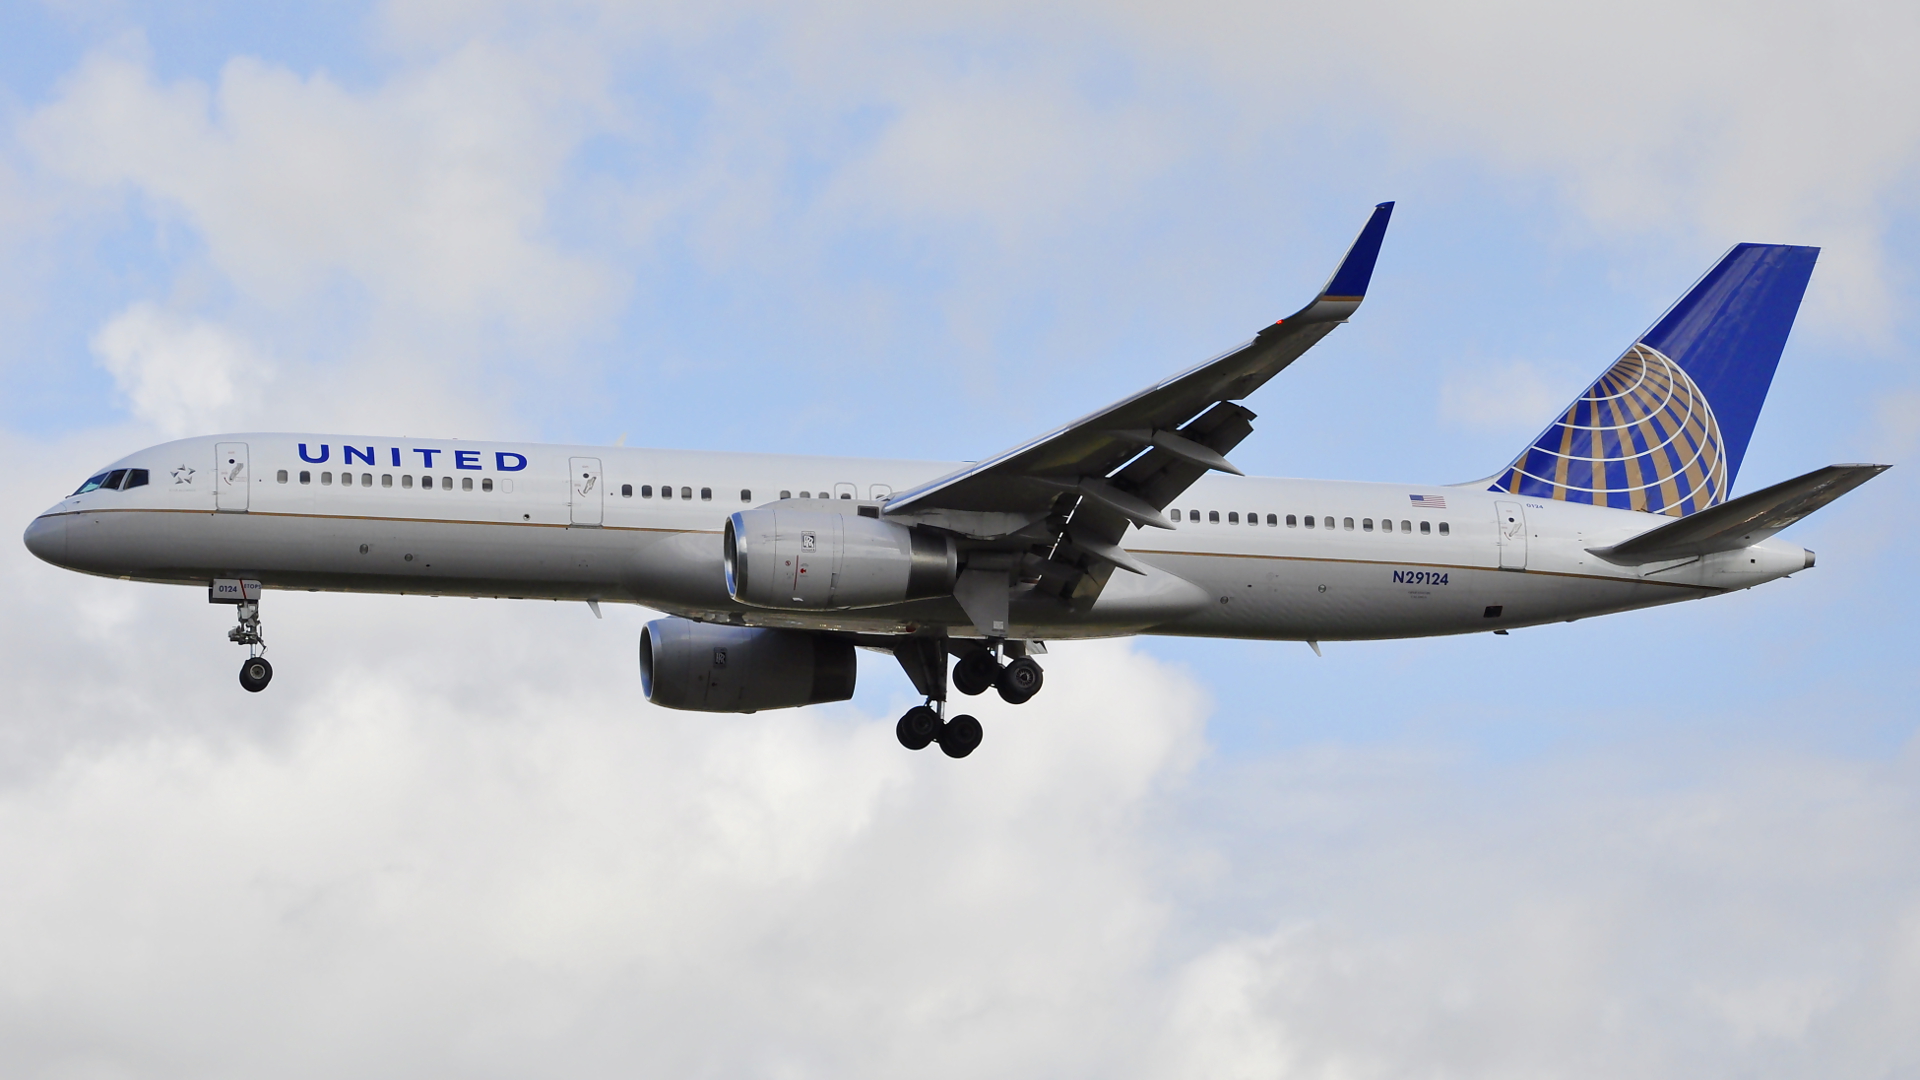 N29124 ✈ United Airlines Boeing 757-224(WL) @ London-Heathrow